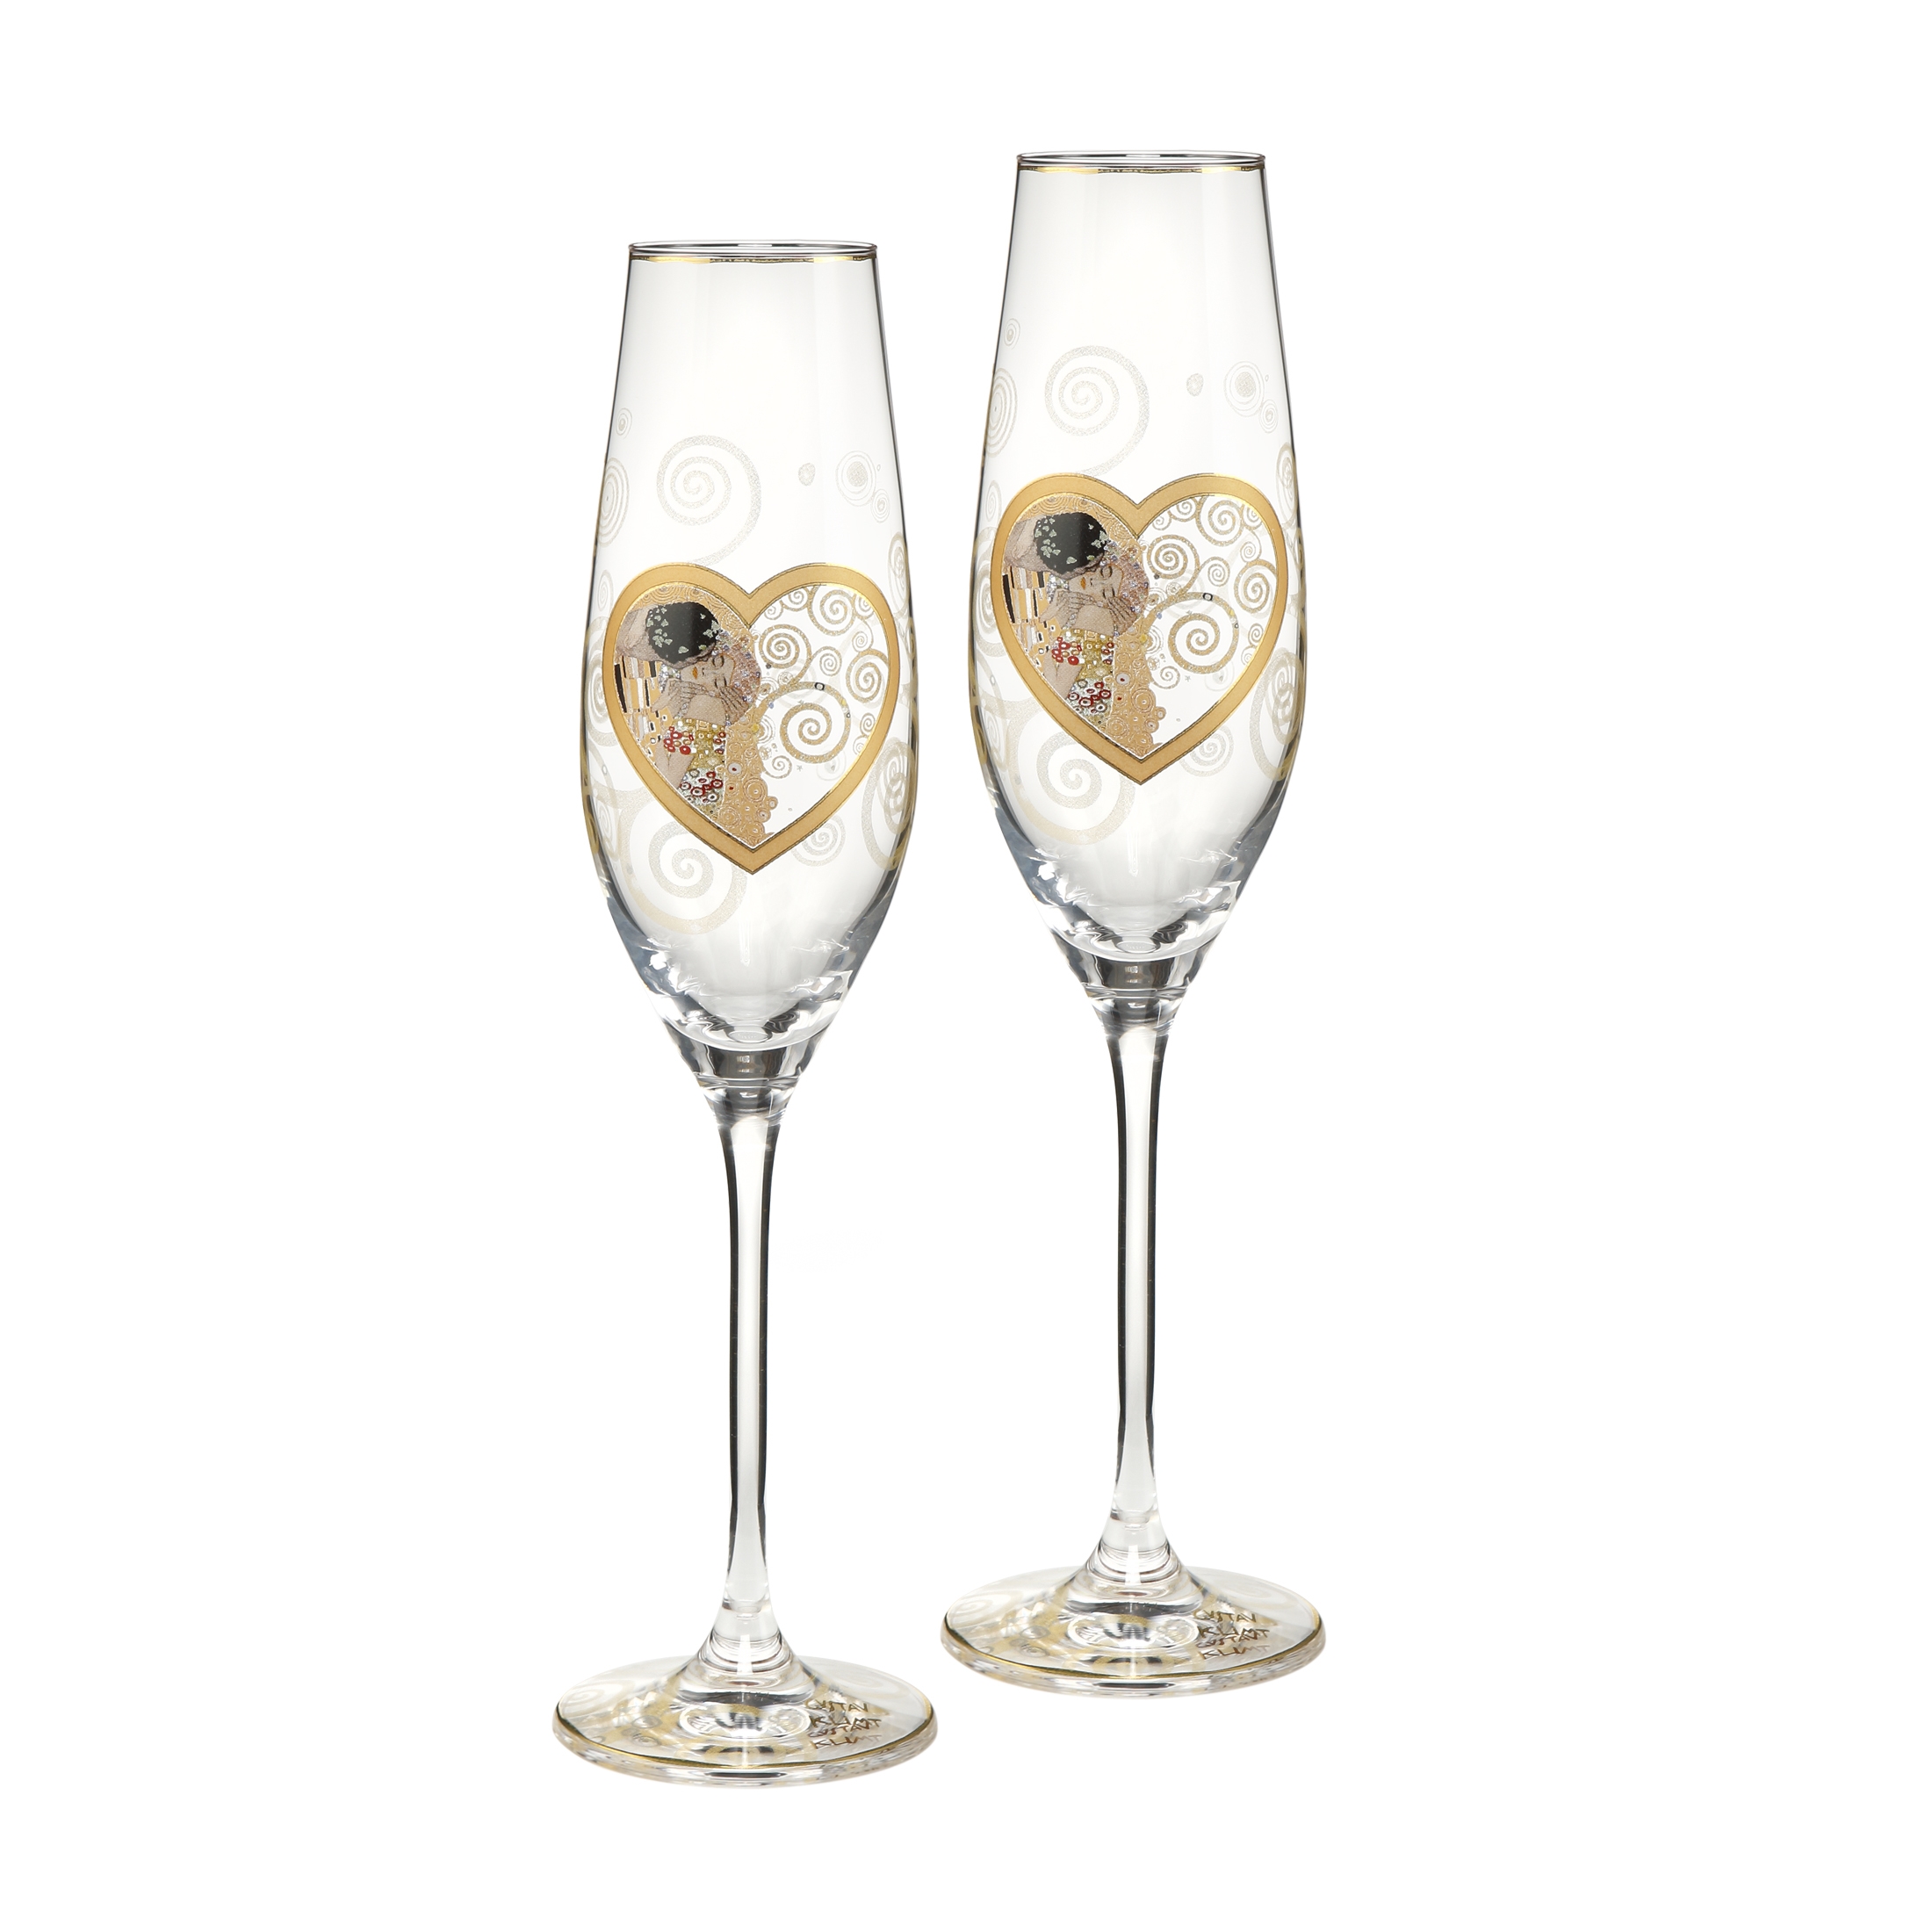 Heart Kiss - Champagne Glasses Gift Set Artis Orbis Gustav Klimt